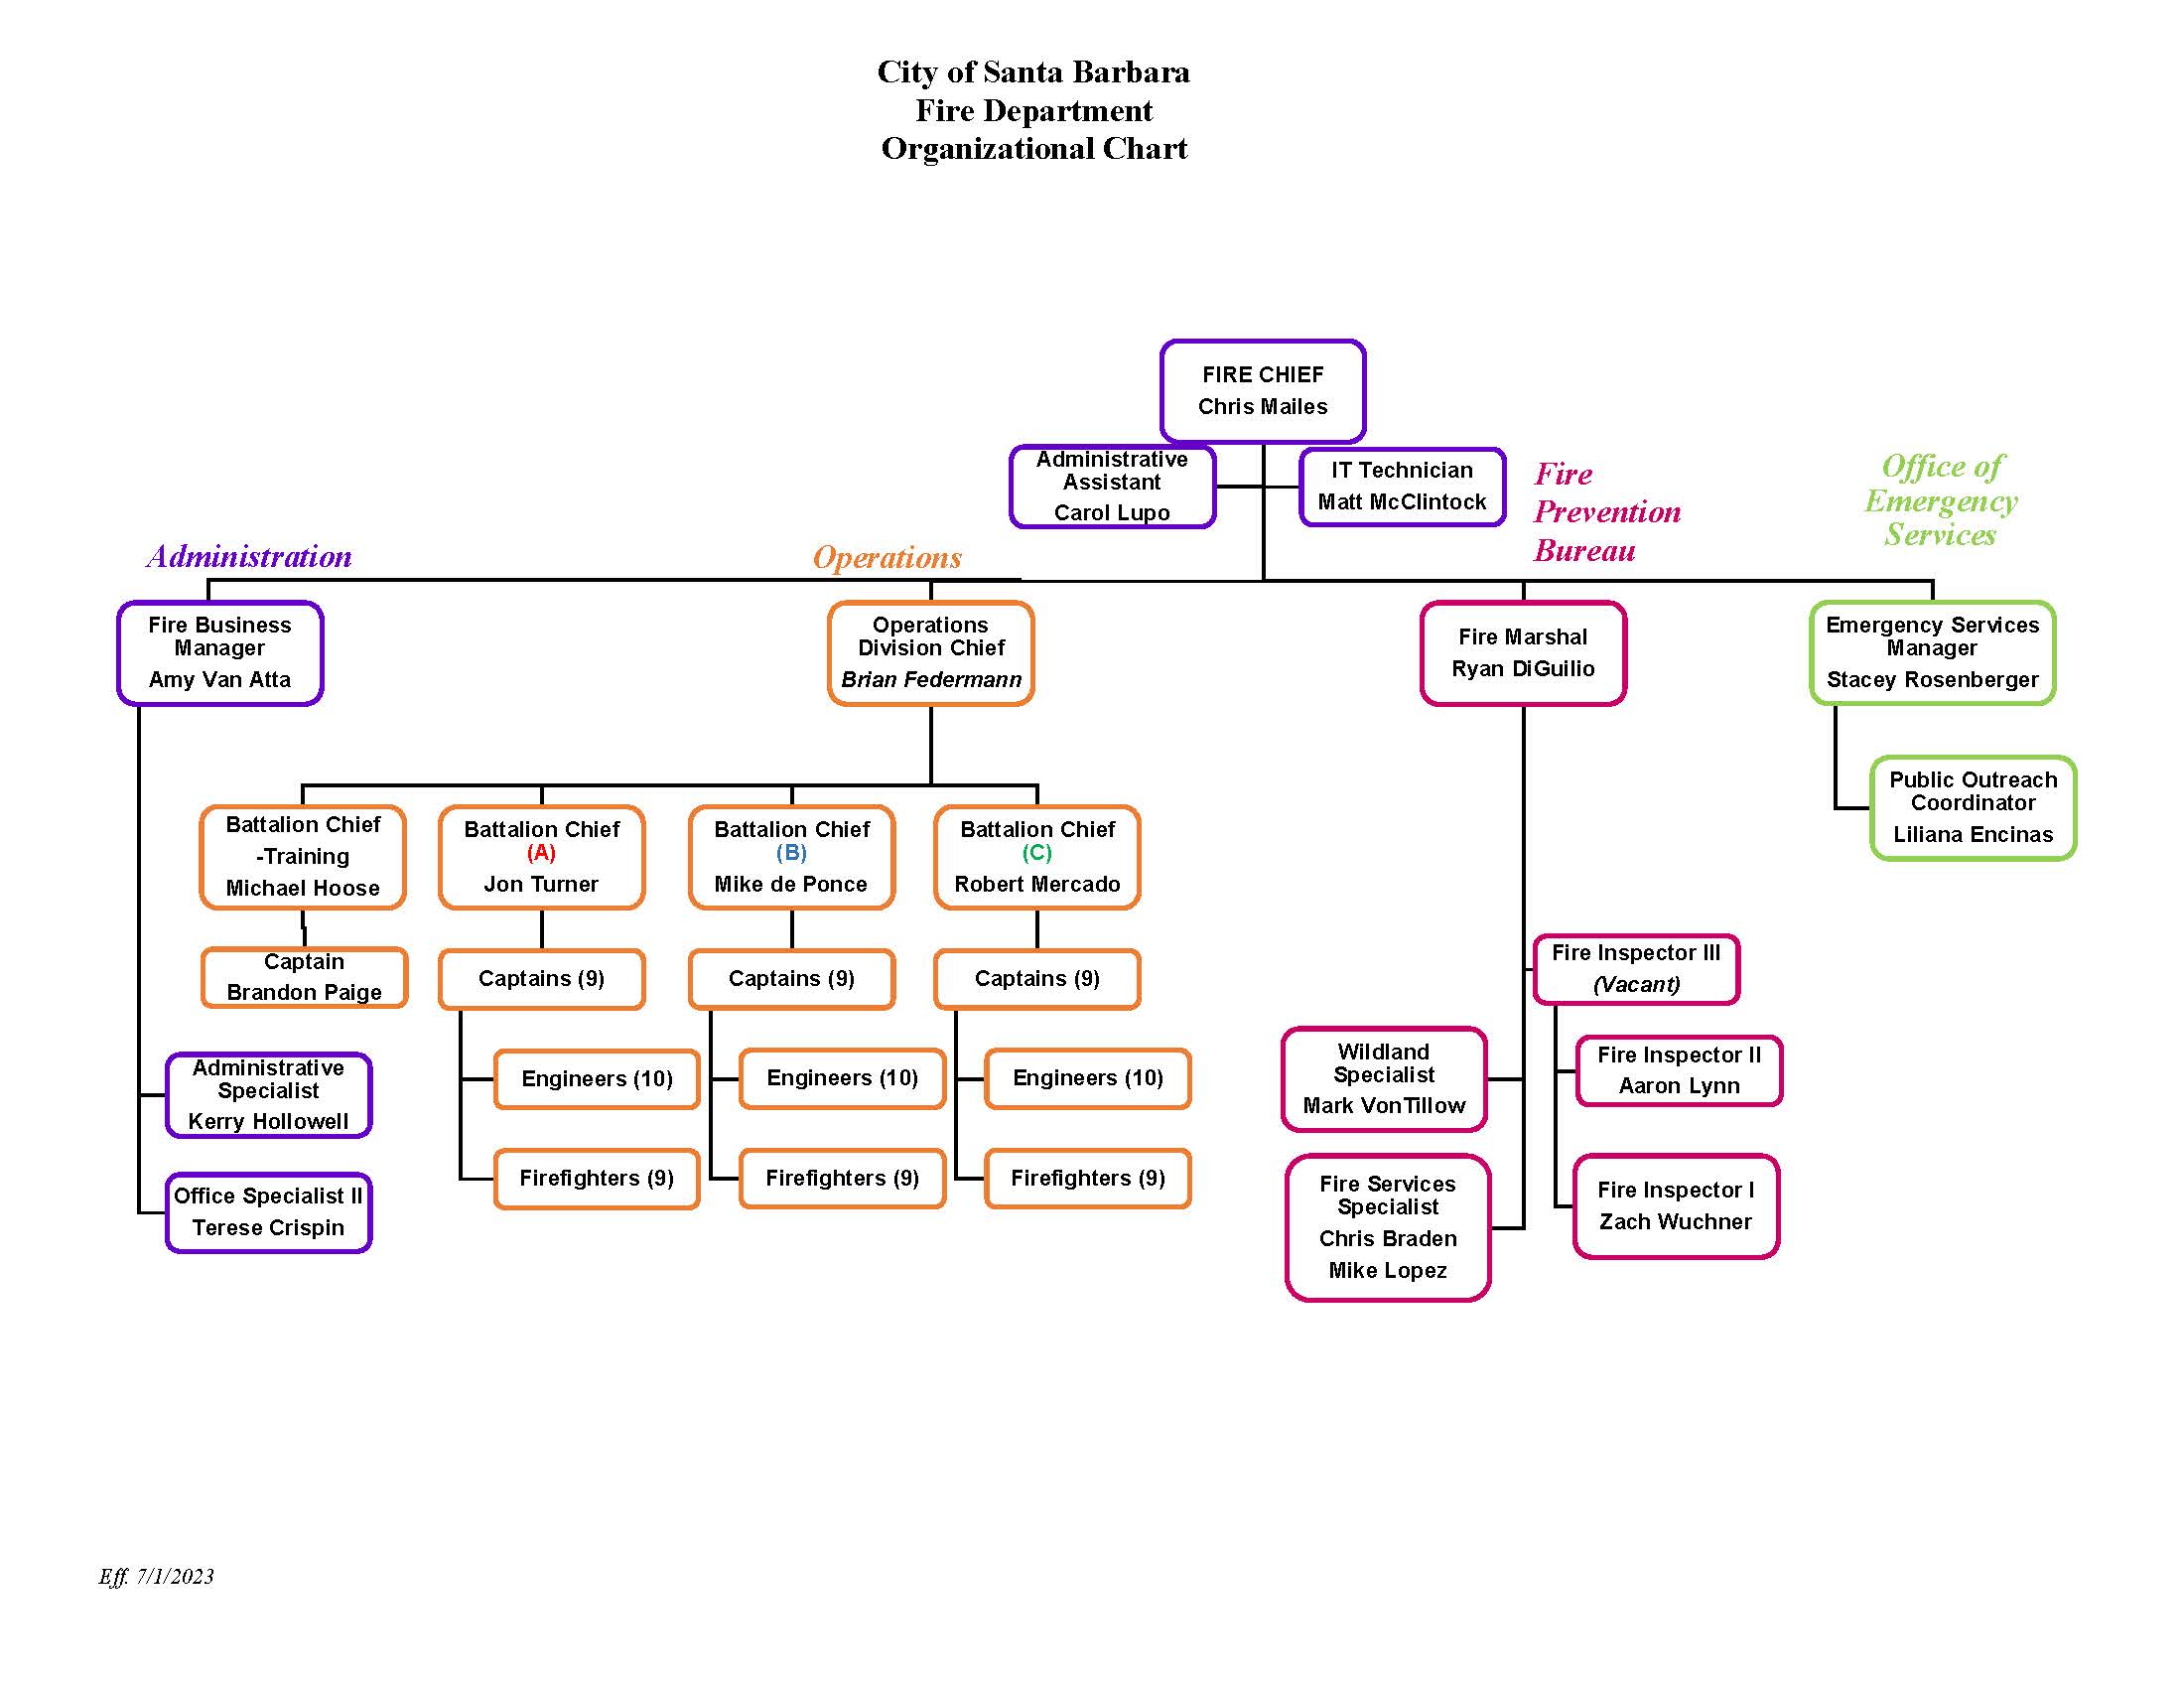 July 2023 Fire Organizational Chart